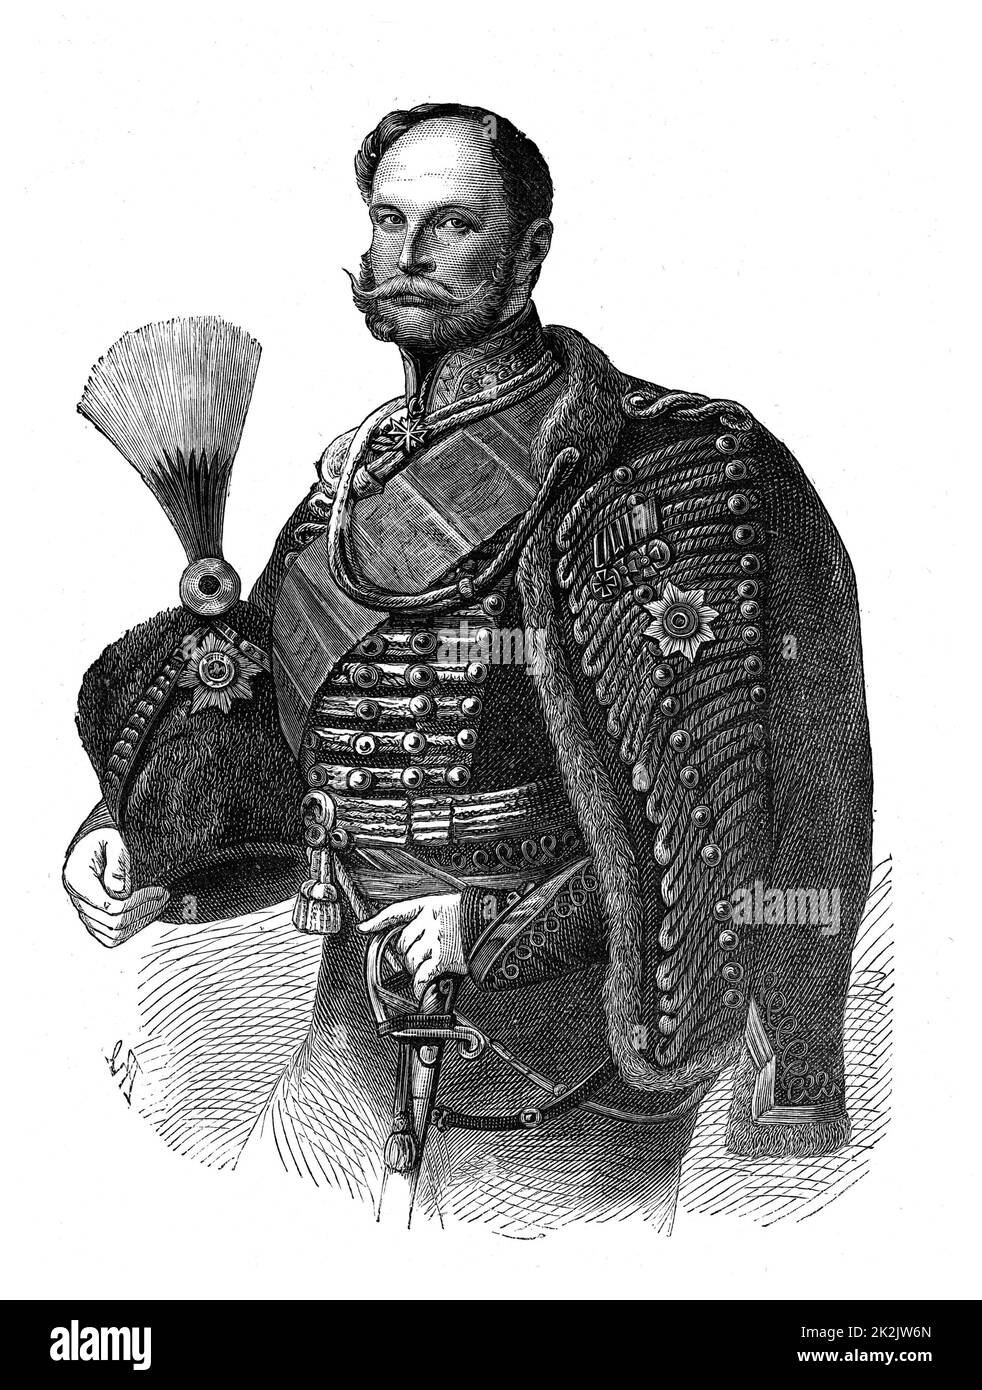 Wilhelm i. (1797-1888) König von Preußen von 1861. Erster Kaiser von Deutschland aus dem Jahr 1871. Gravur. Stockfoto